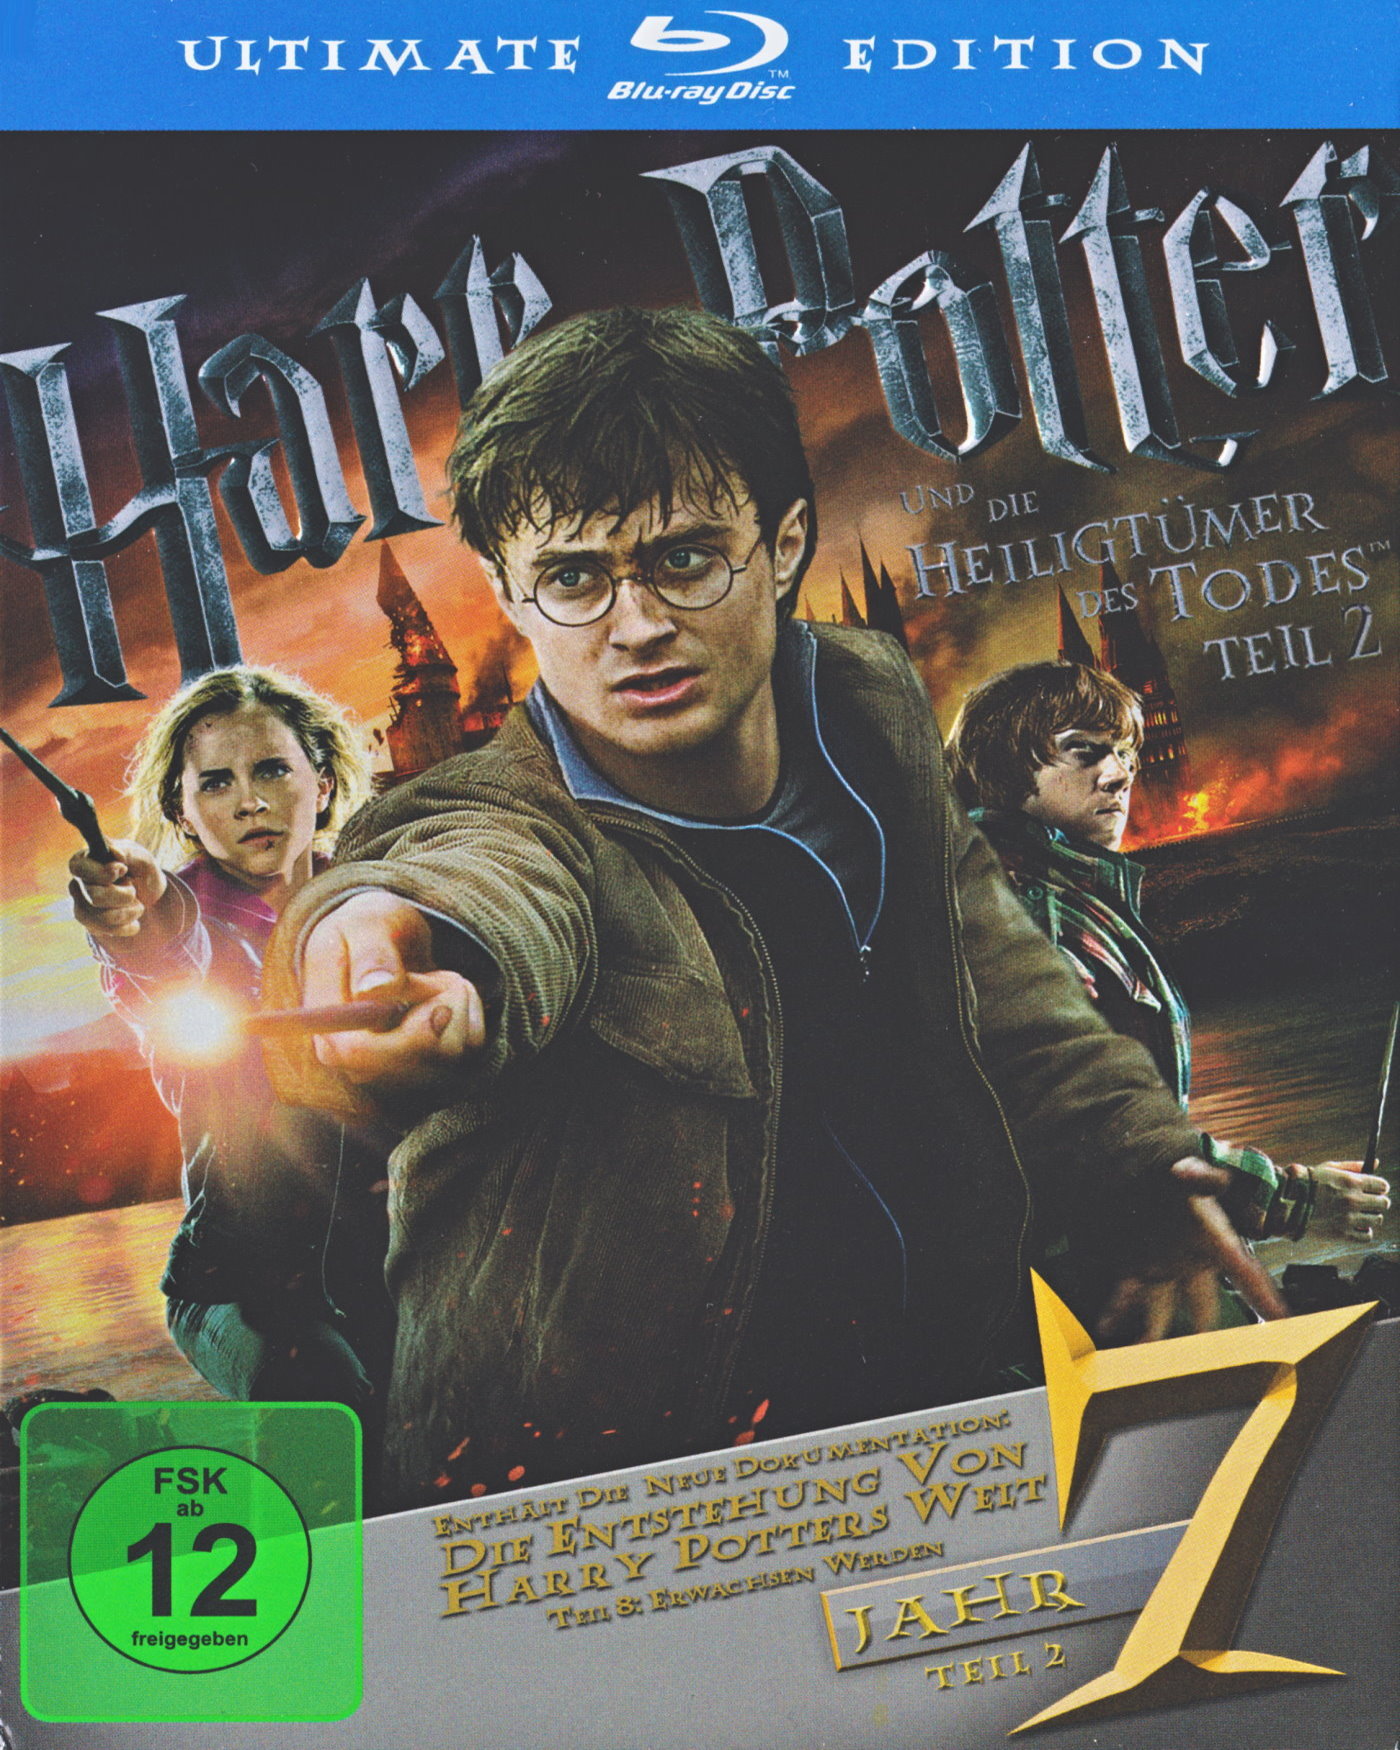 Cover - Harry Potter und die Heiligtümer des Todes - Teil 2.jpg